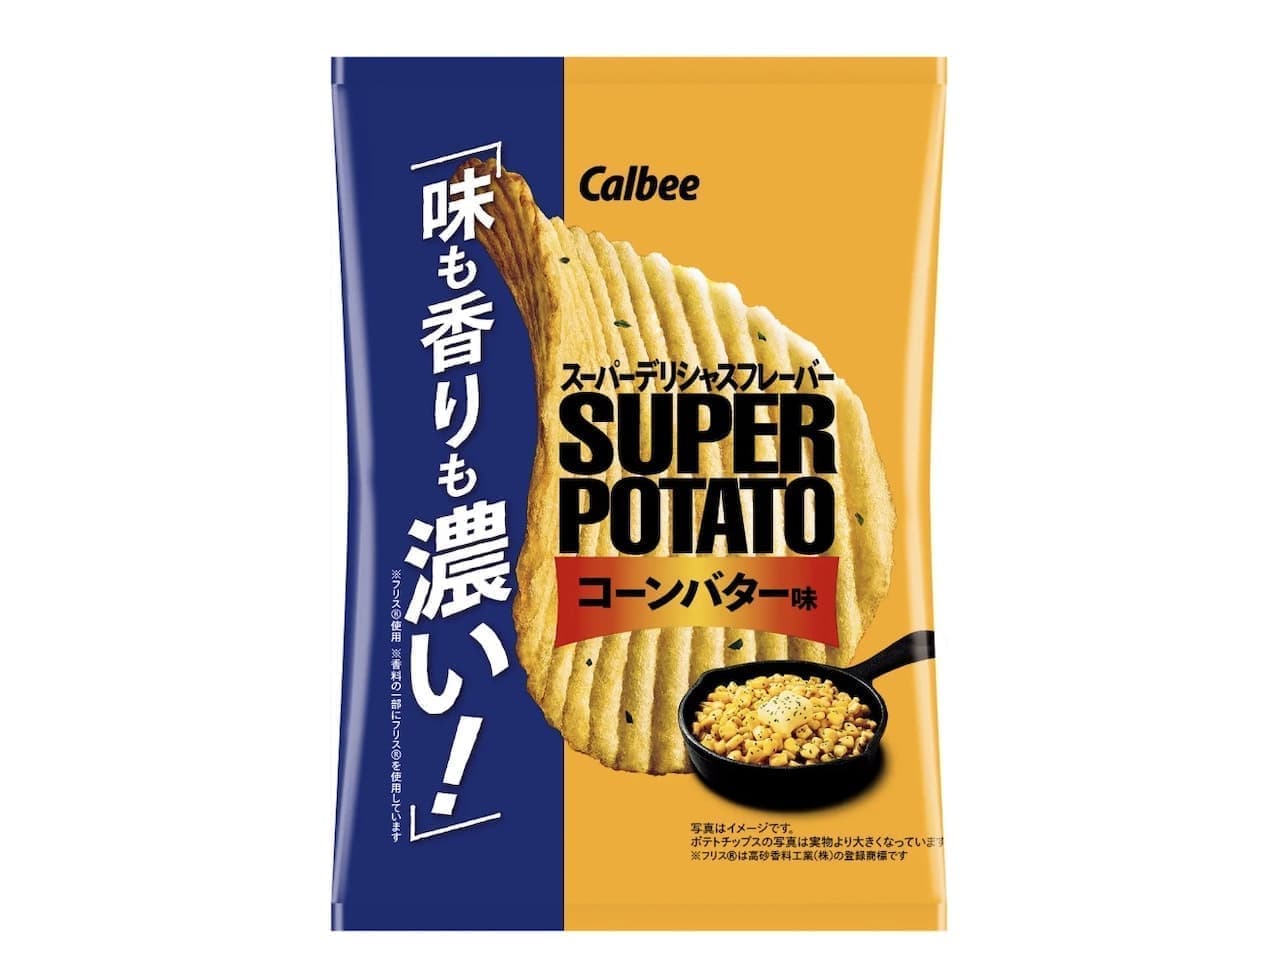 Calbee "Super Potato Corn Butter Flavor